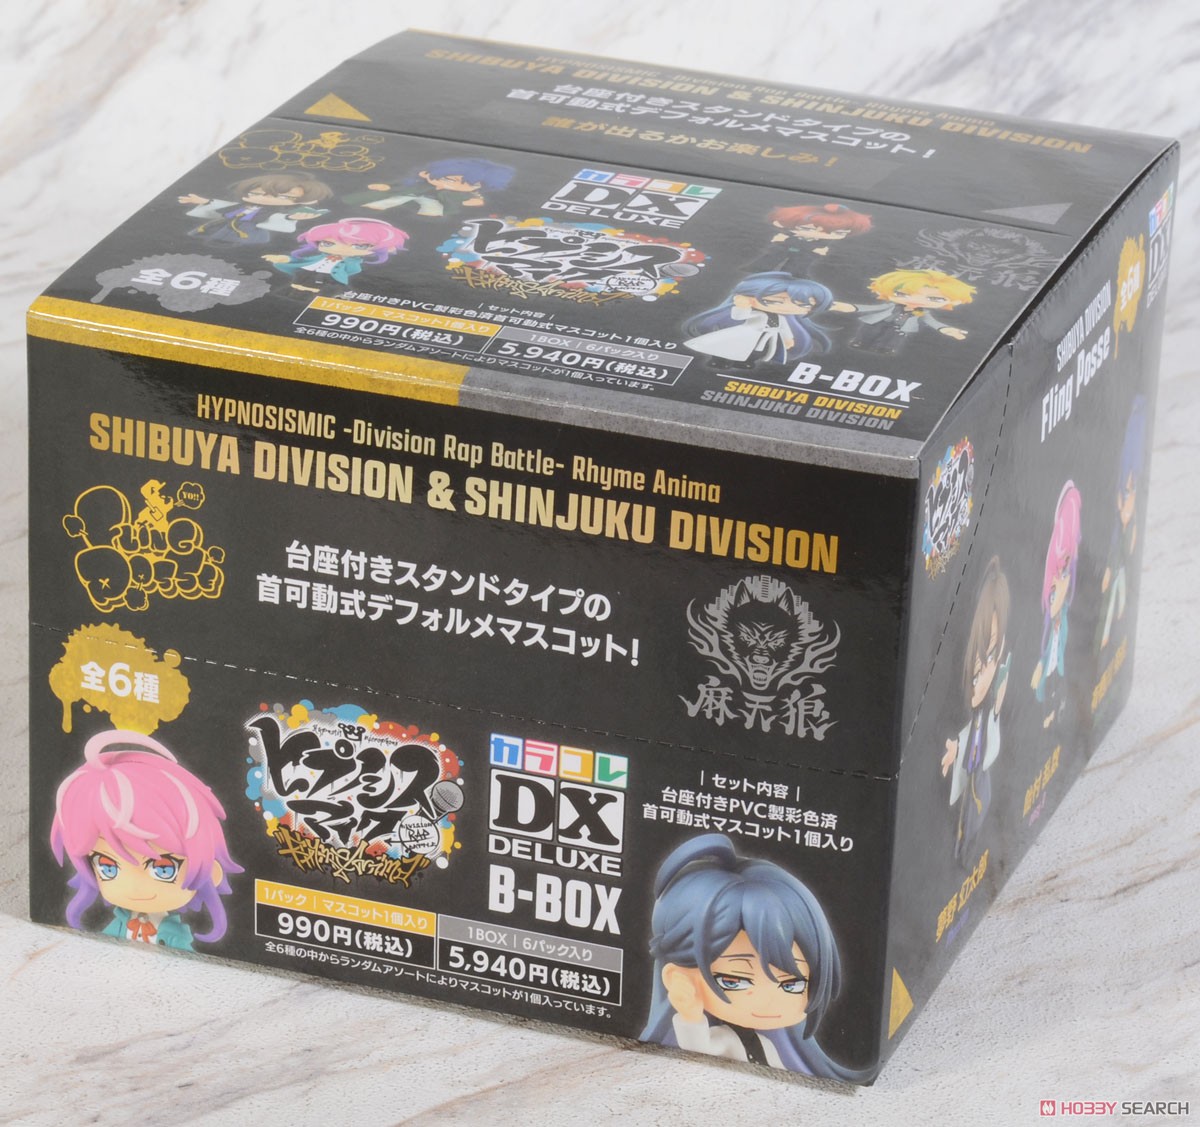 『ヒプノシスマイク-Division Rap Battle-』 Rhyme Anima カラコレ DX B-BOX (6個セット) (フィギュア) パッケージ1